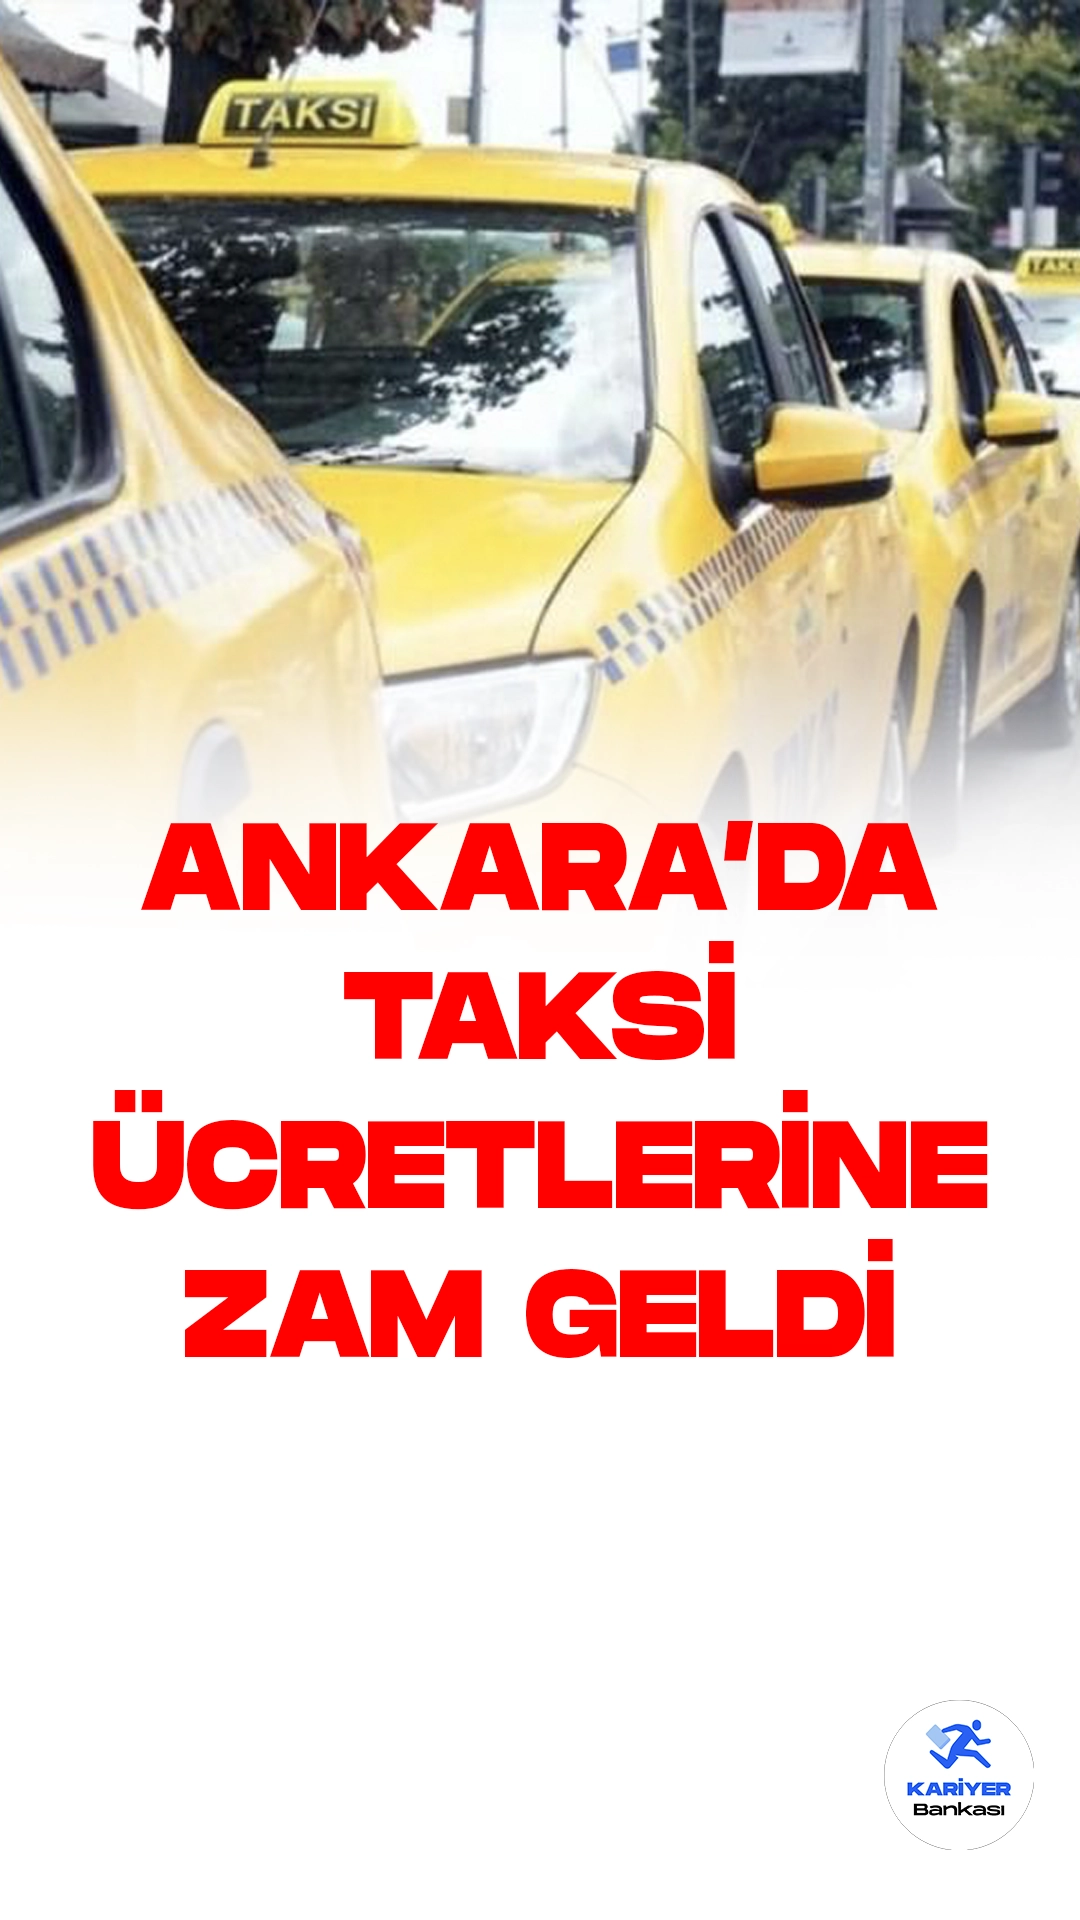 Ankara'da Taksi Ücretlerine Zam Geldi.Ankara'da taksiler için yeni ücret tarifesi bugünden itibaren yürürlüğe girdi, ve taksicilerin taksimetrelerini güncellemek için sıraya girmelerine sebep oldu.